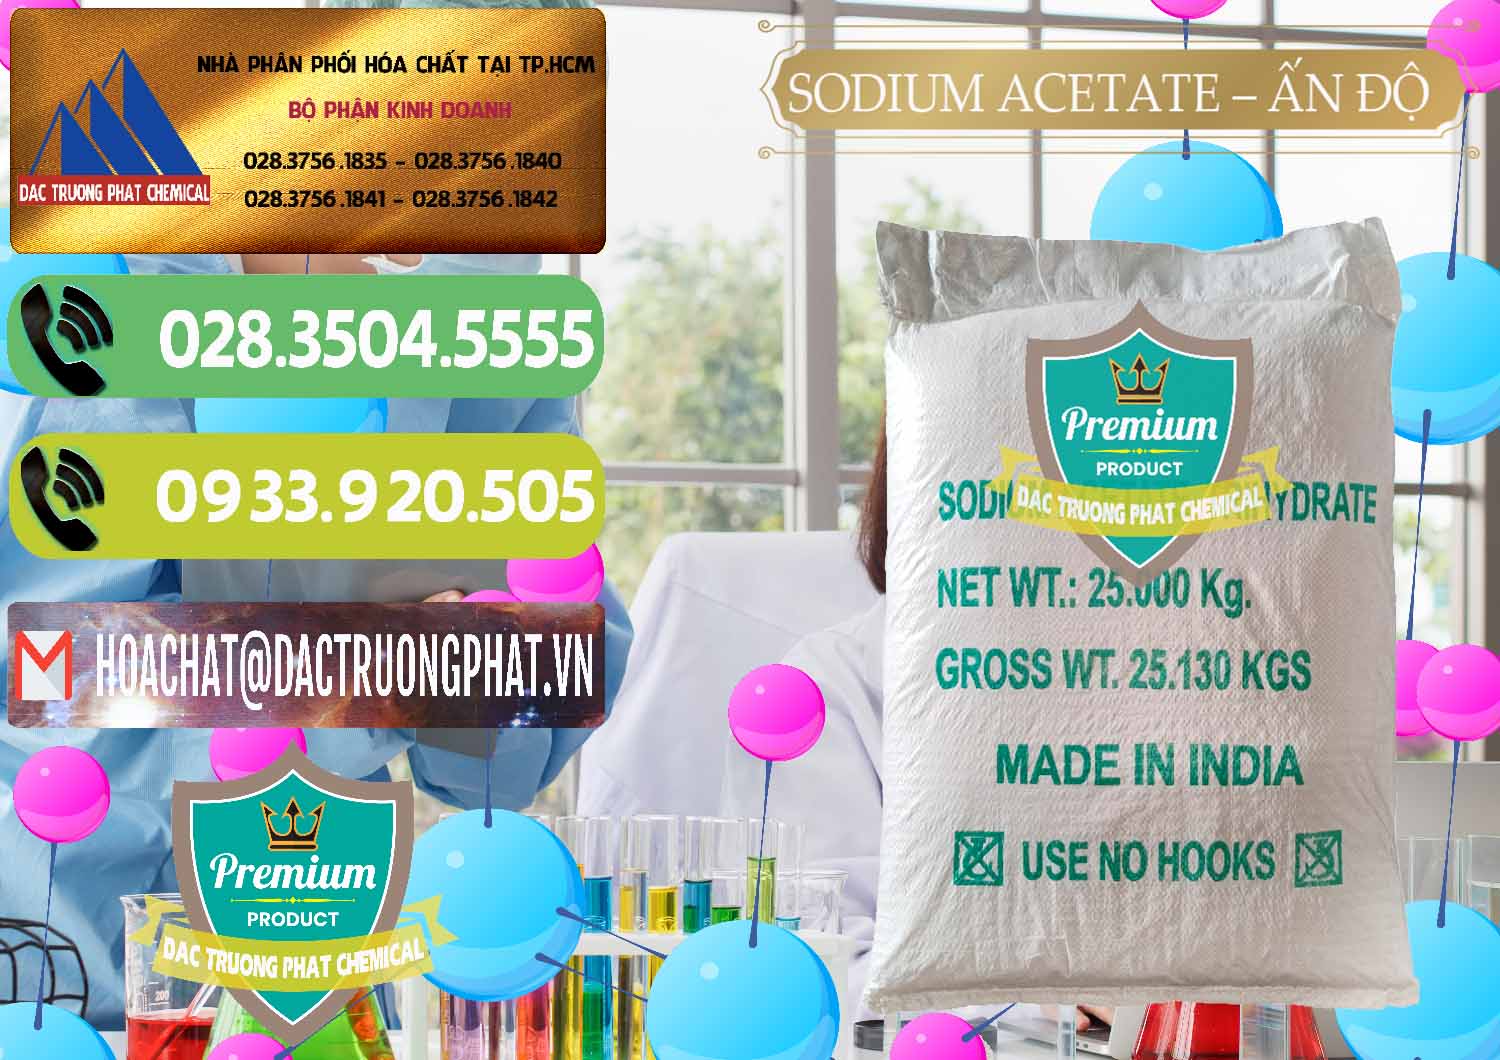 Cty kinh doanh - bán Sodium Acetate - Natri Acetate Ấn Độ India - 0133 - Cty cung cấp - phân phối hóa chất tại TP.HCM - hoachatmientay.vn